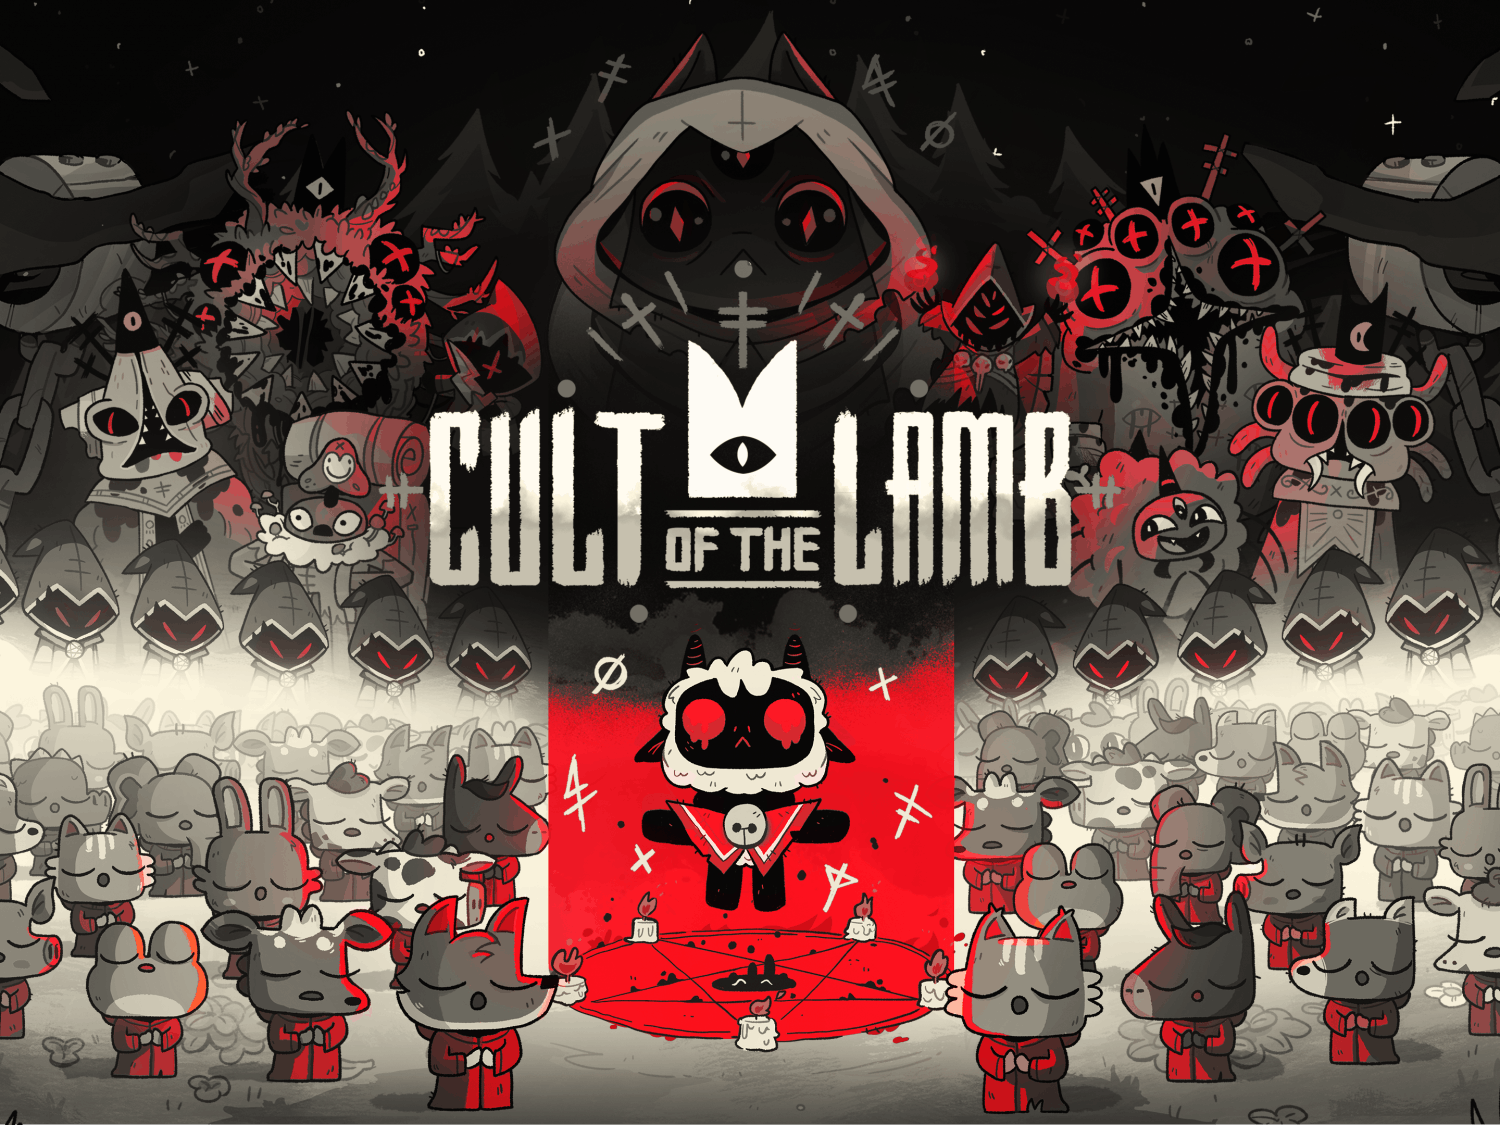 Cult of the Lamb - Key Art.png